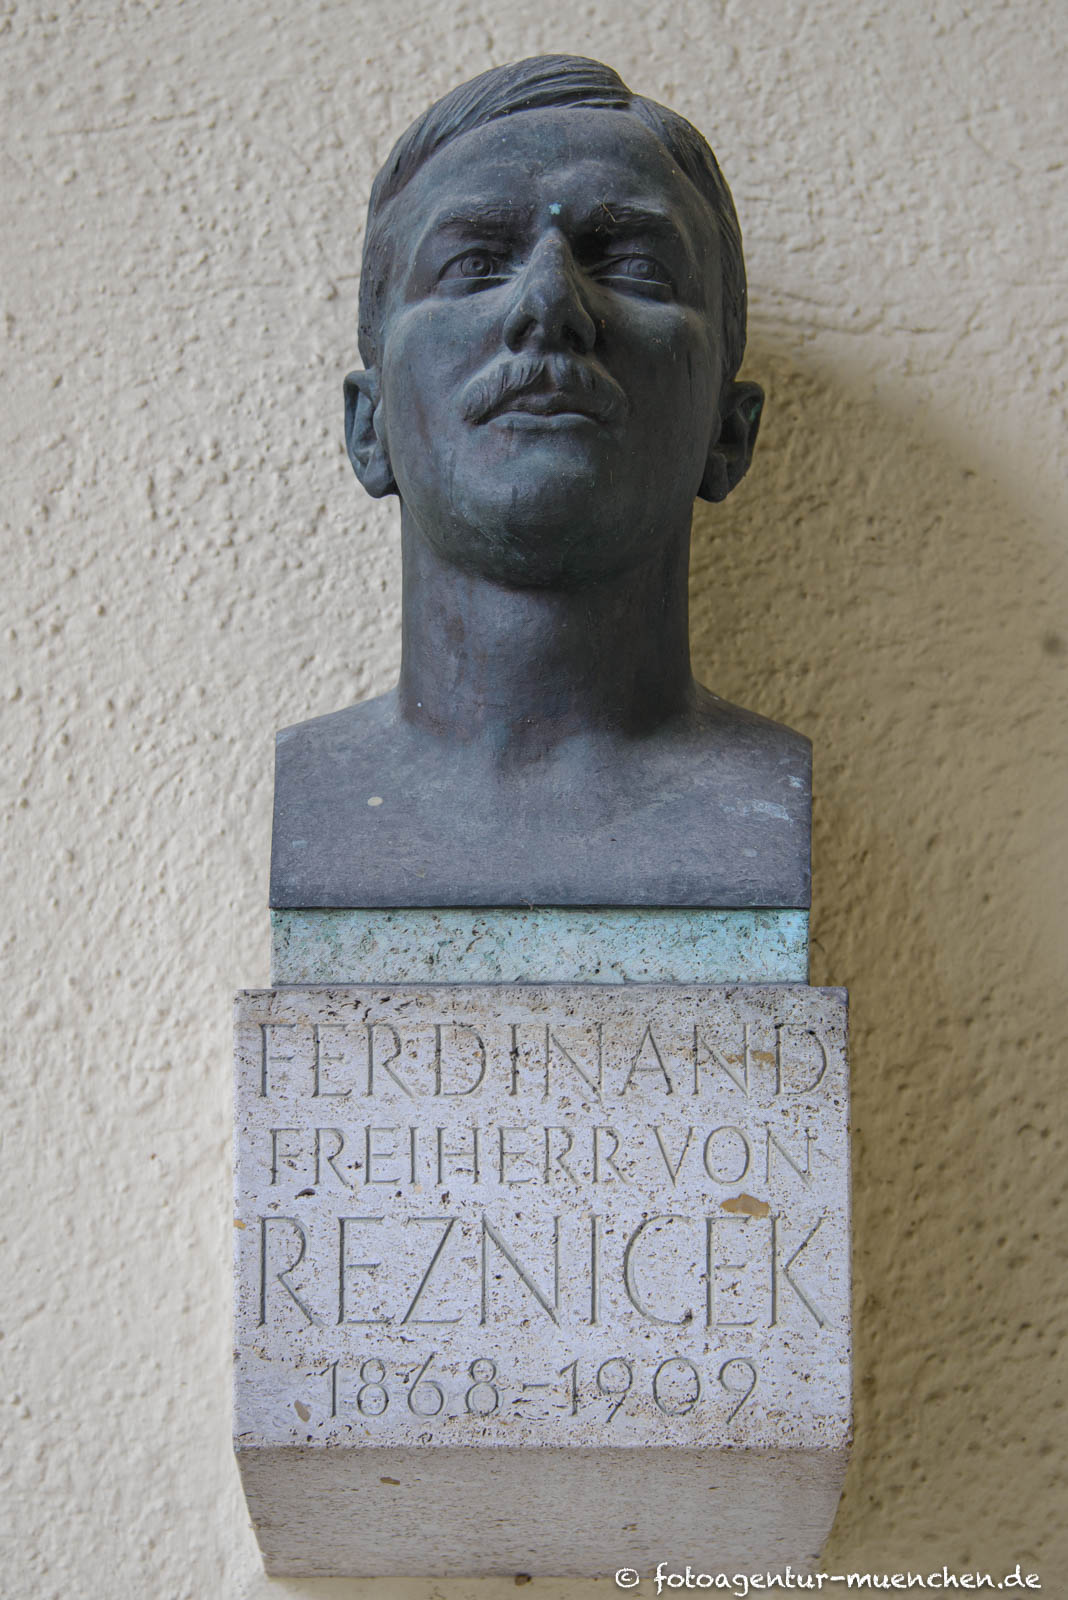 Ferdinand Freiherr von Reznicek